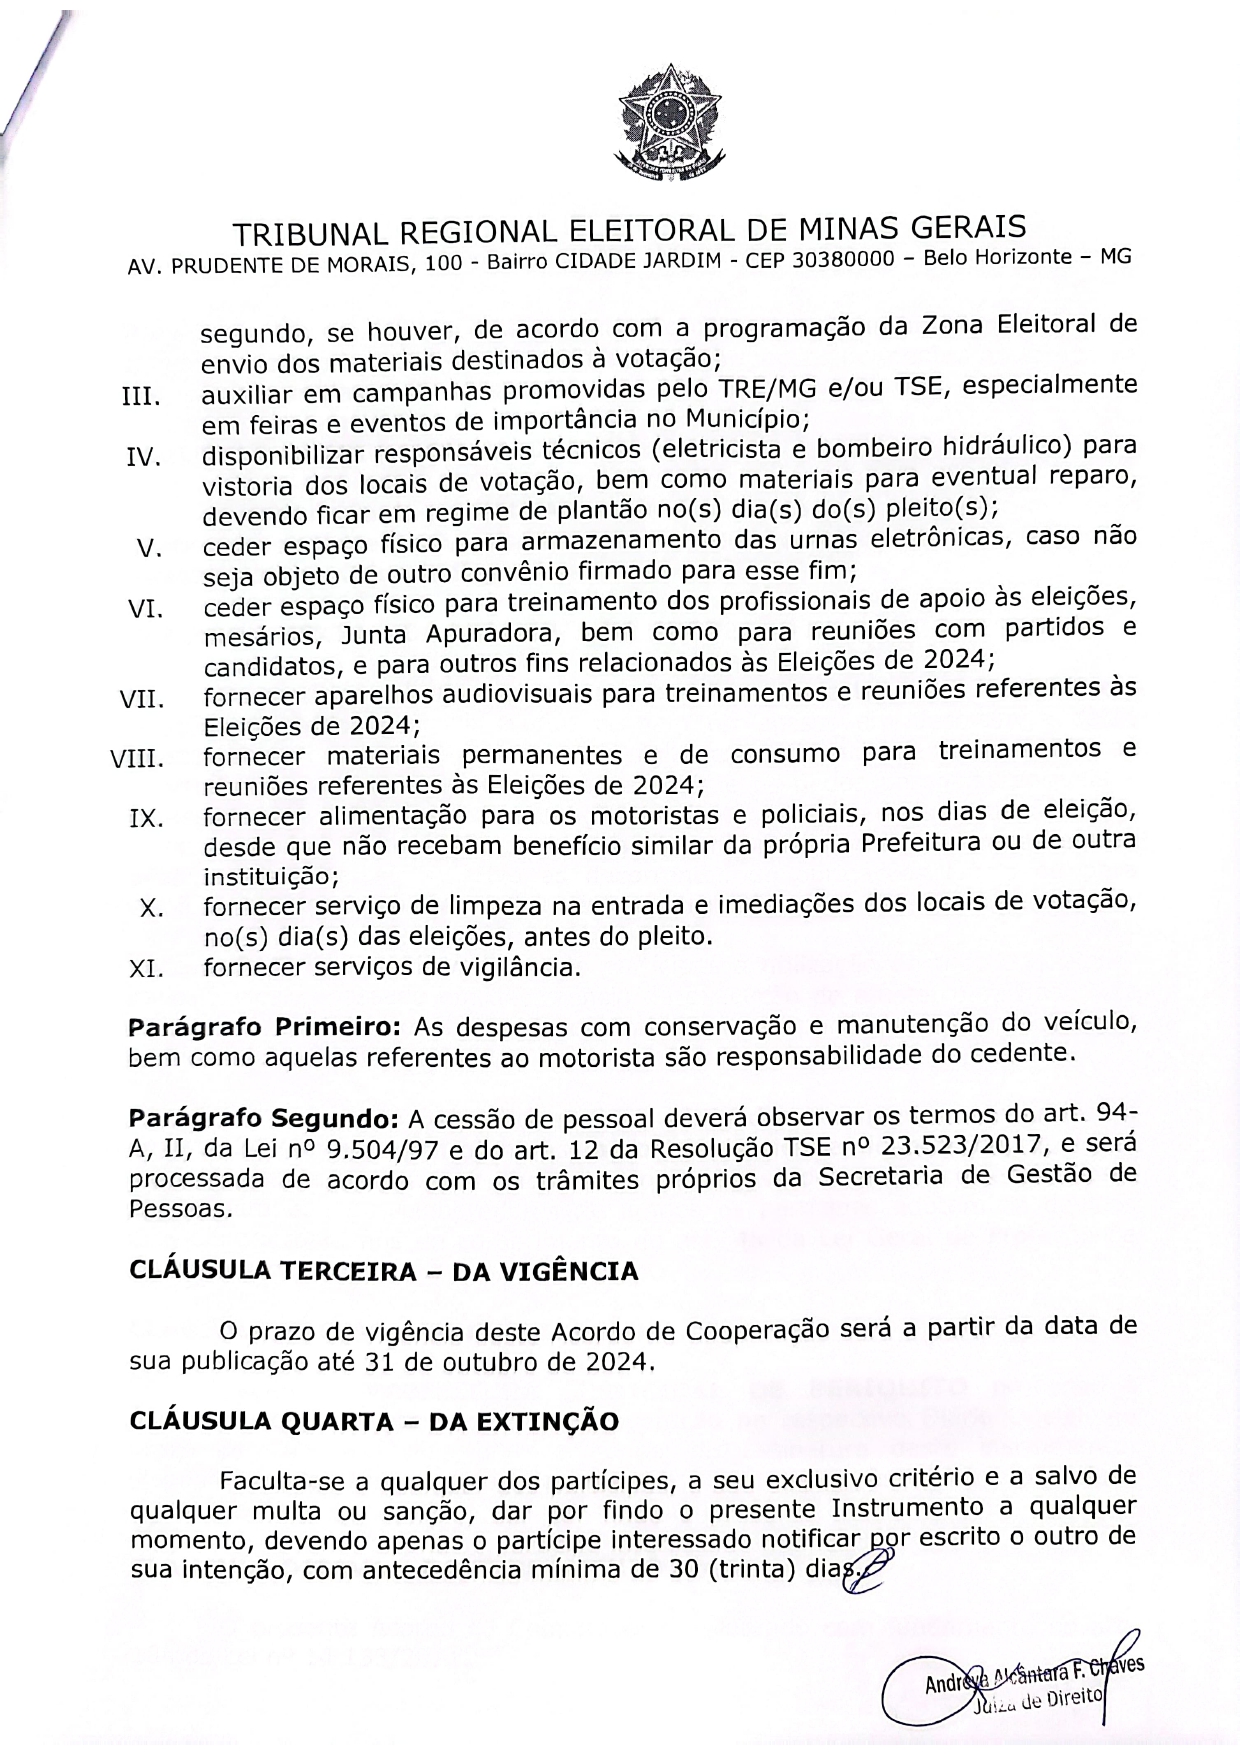 ACORDO DE COOPERAÇÃO PERIQUITO ELEIÇÕES page 0002